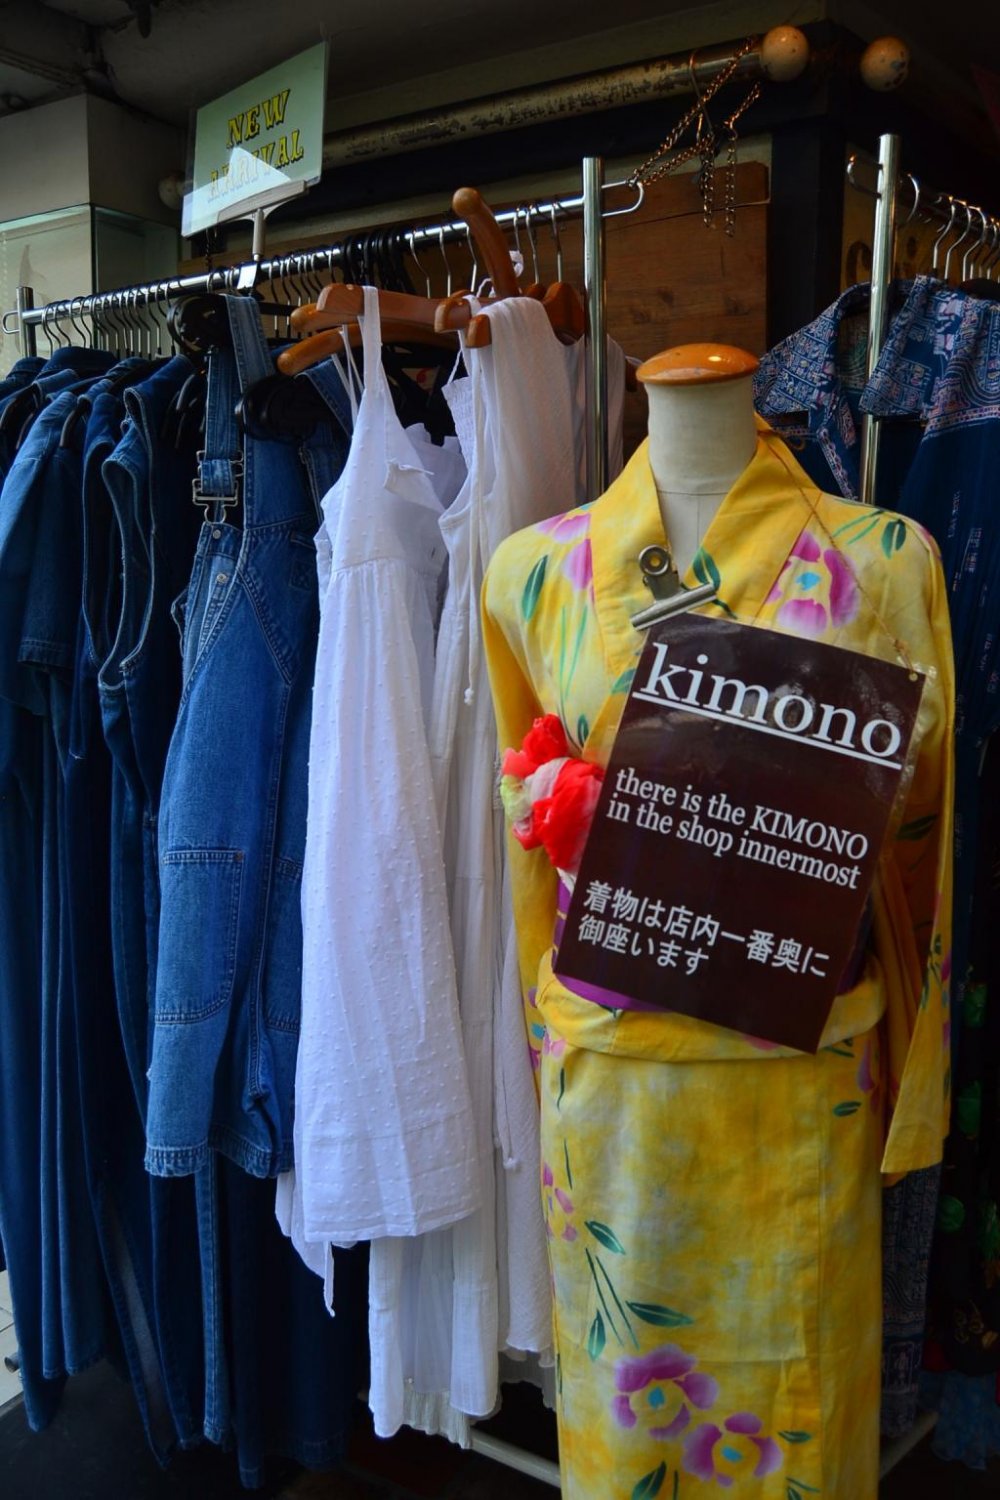 This kimono display beckons visitors to buy!